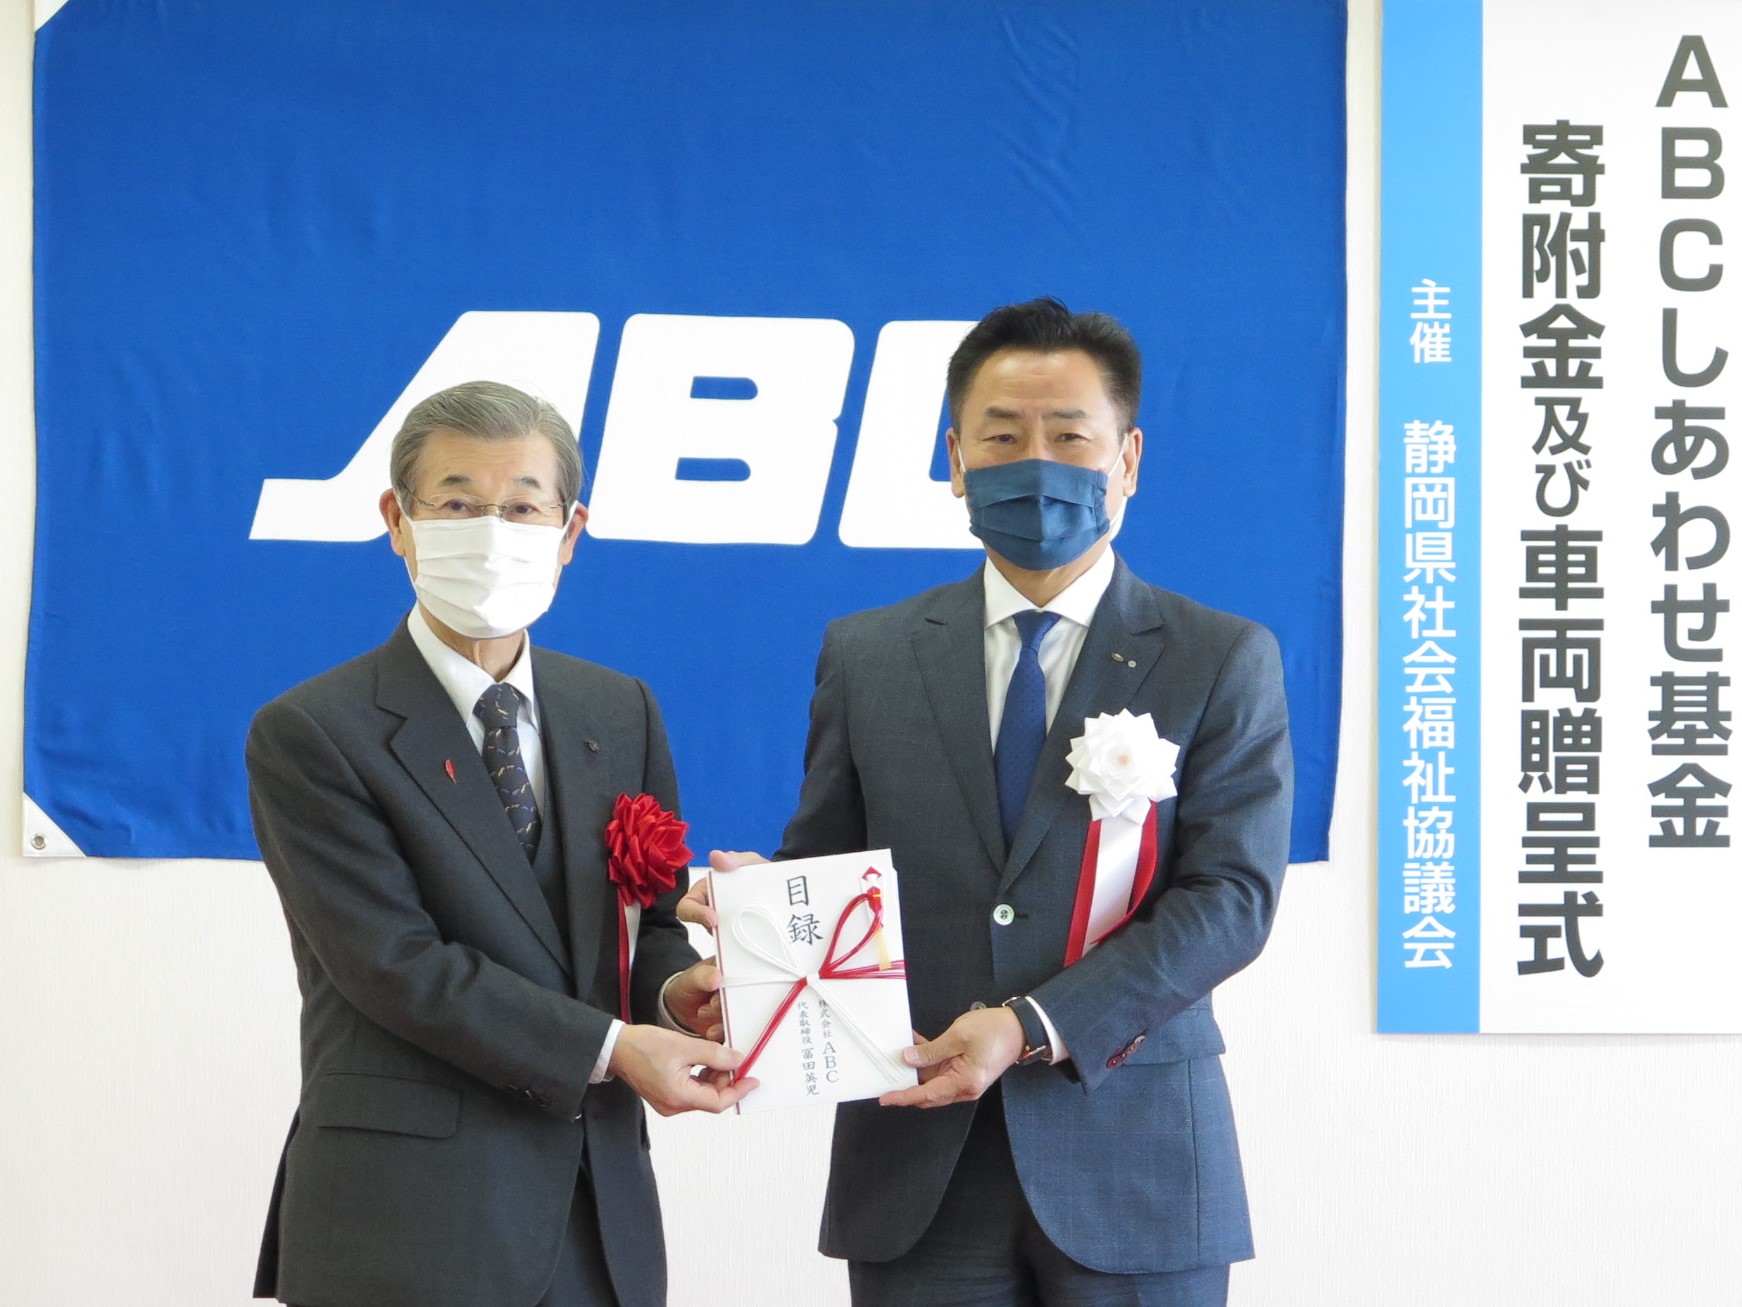 ABCが静岡県社会福祉協議会に300万円を寄付